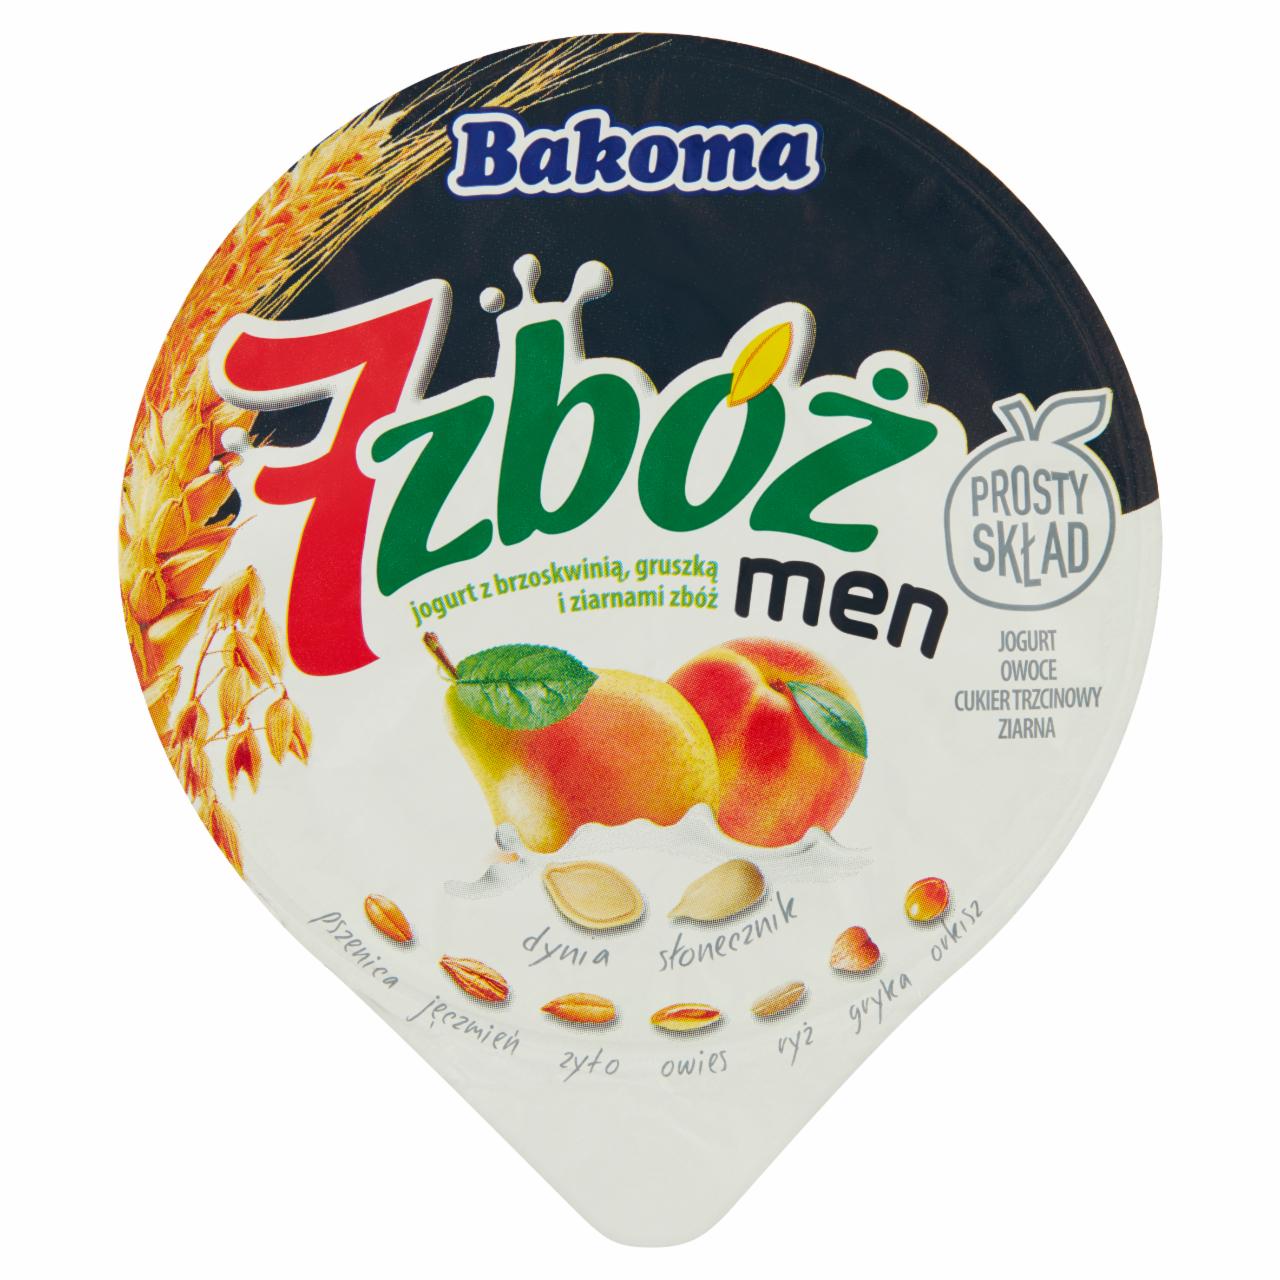 Képek - Men gyümölcsös joghurt mix 2 Bakoma